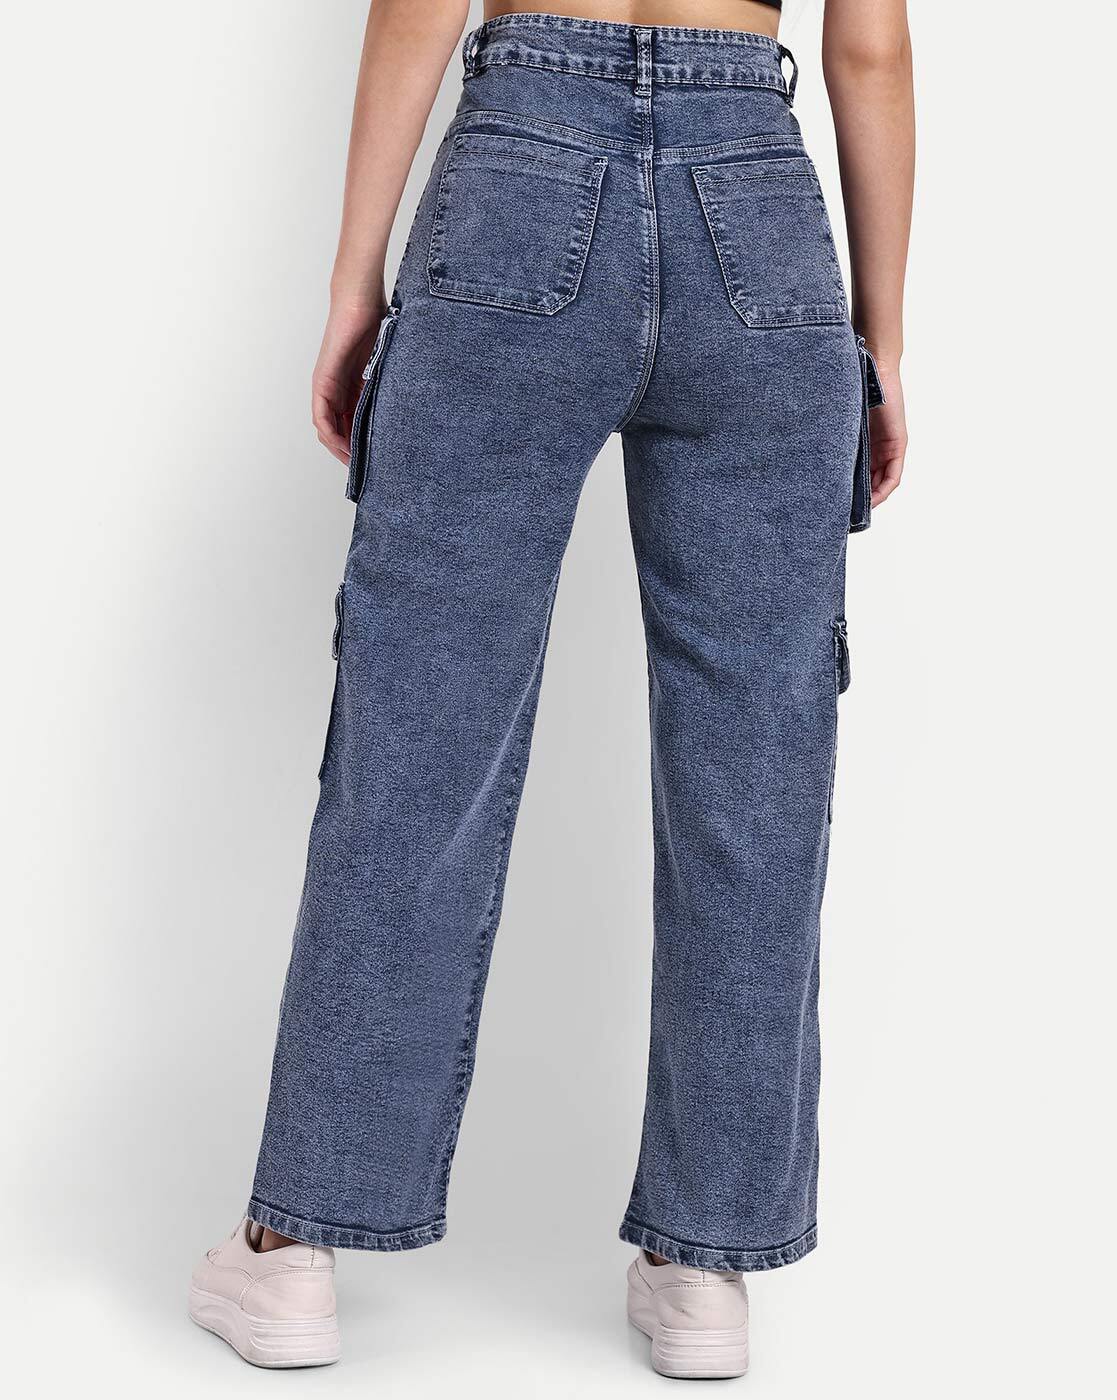 Buy Blue Trousers & Pants for Women by Broadstar Online